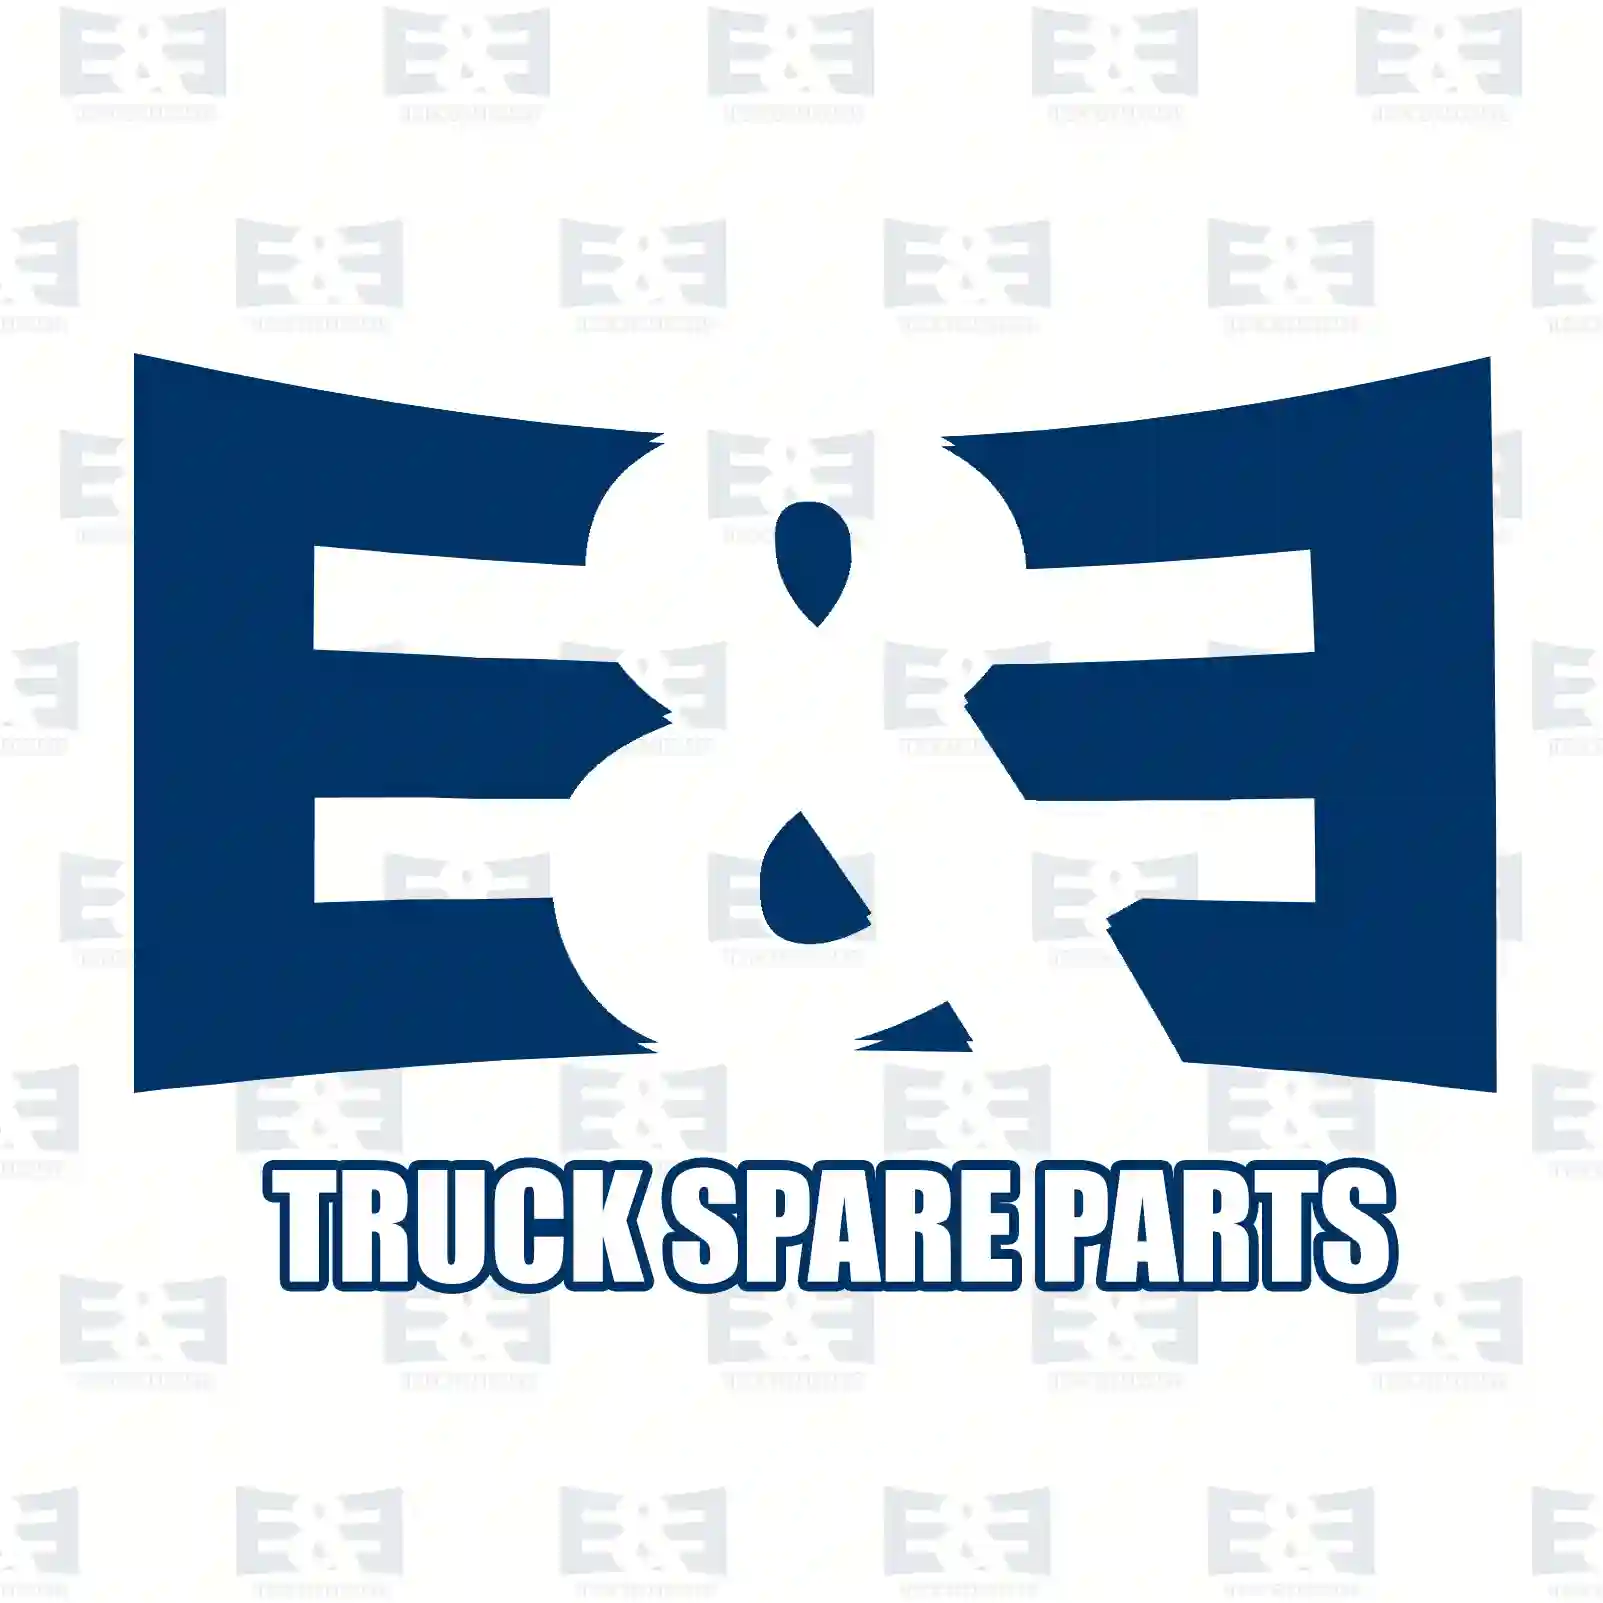  Engine bracket, left || E&E Truck Spare Parts | Truck Spare Parts, Auotomotive Spare Parts